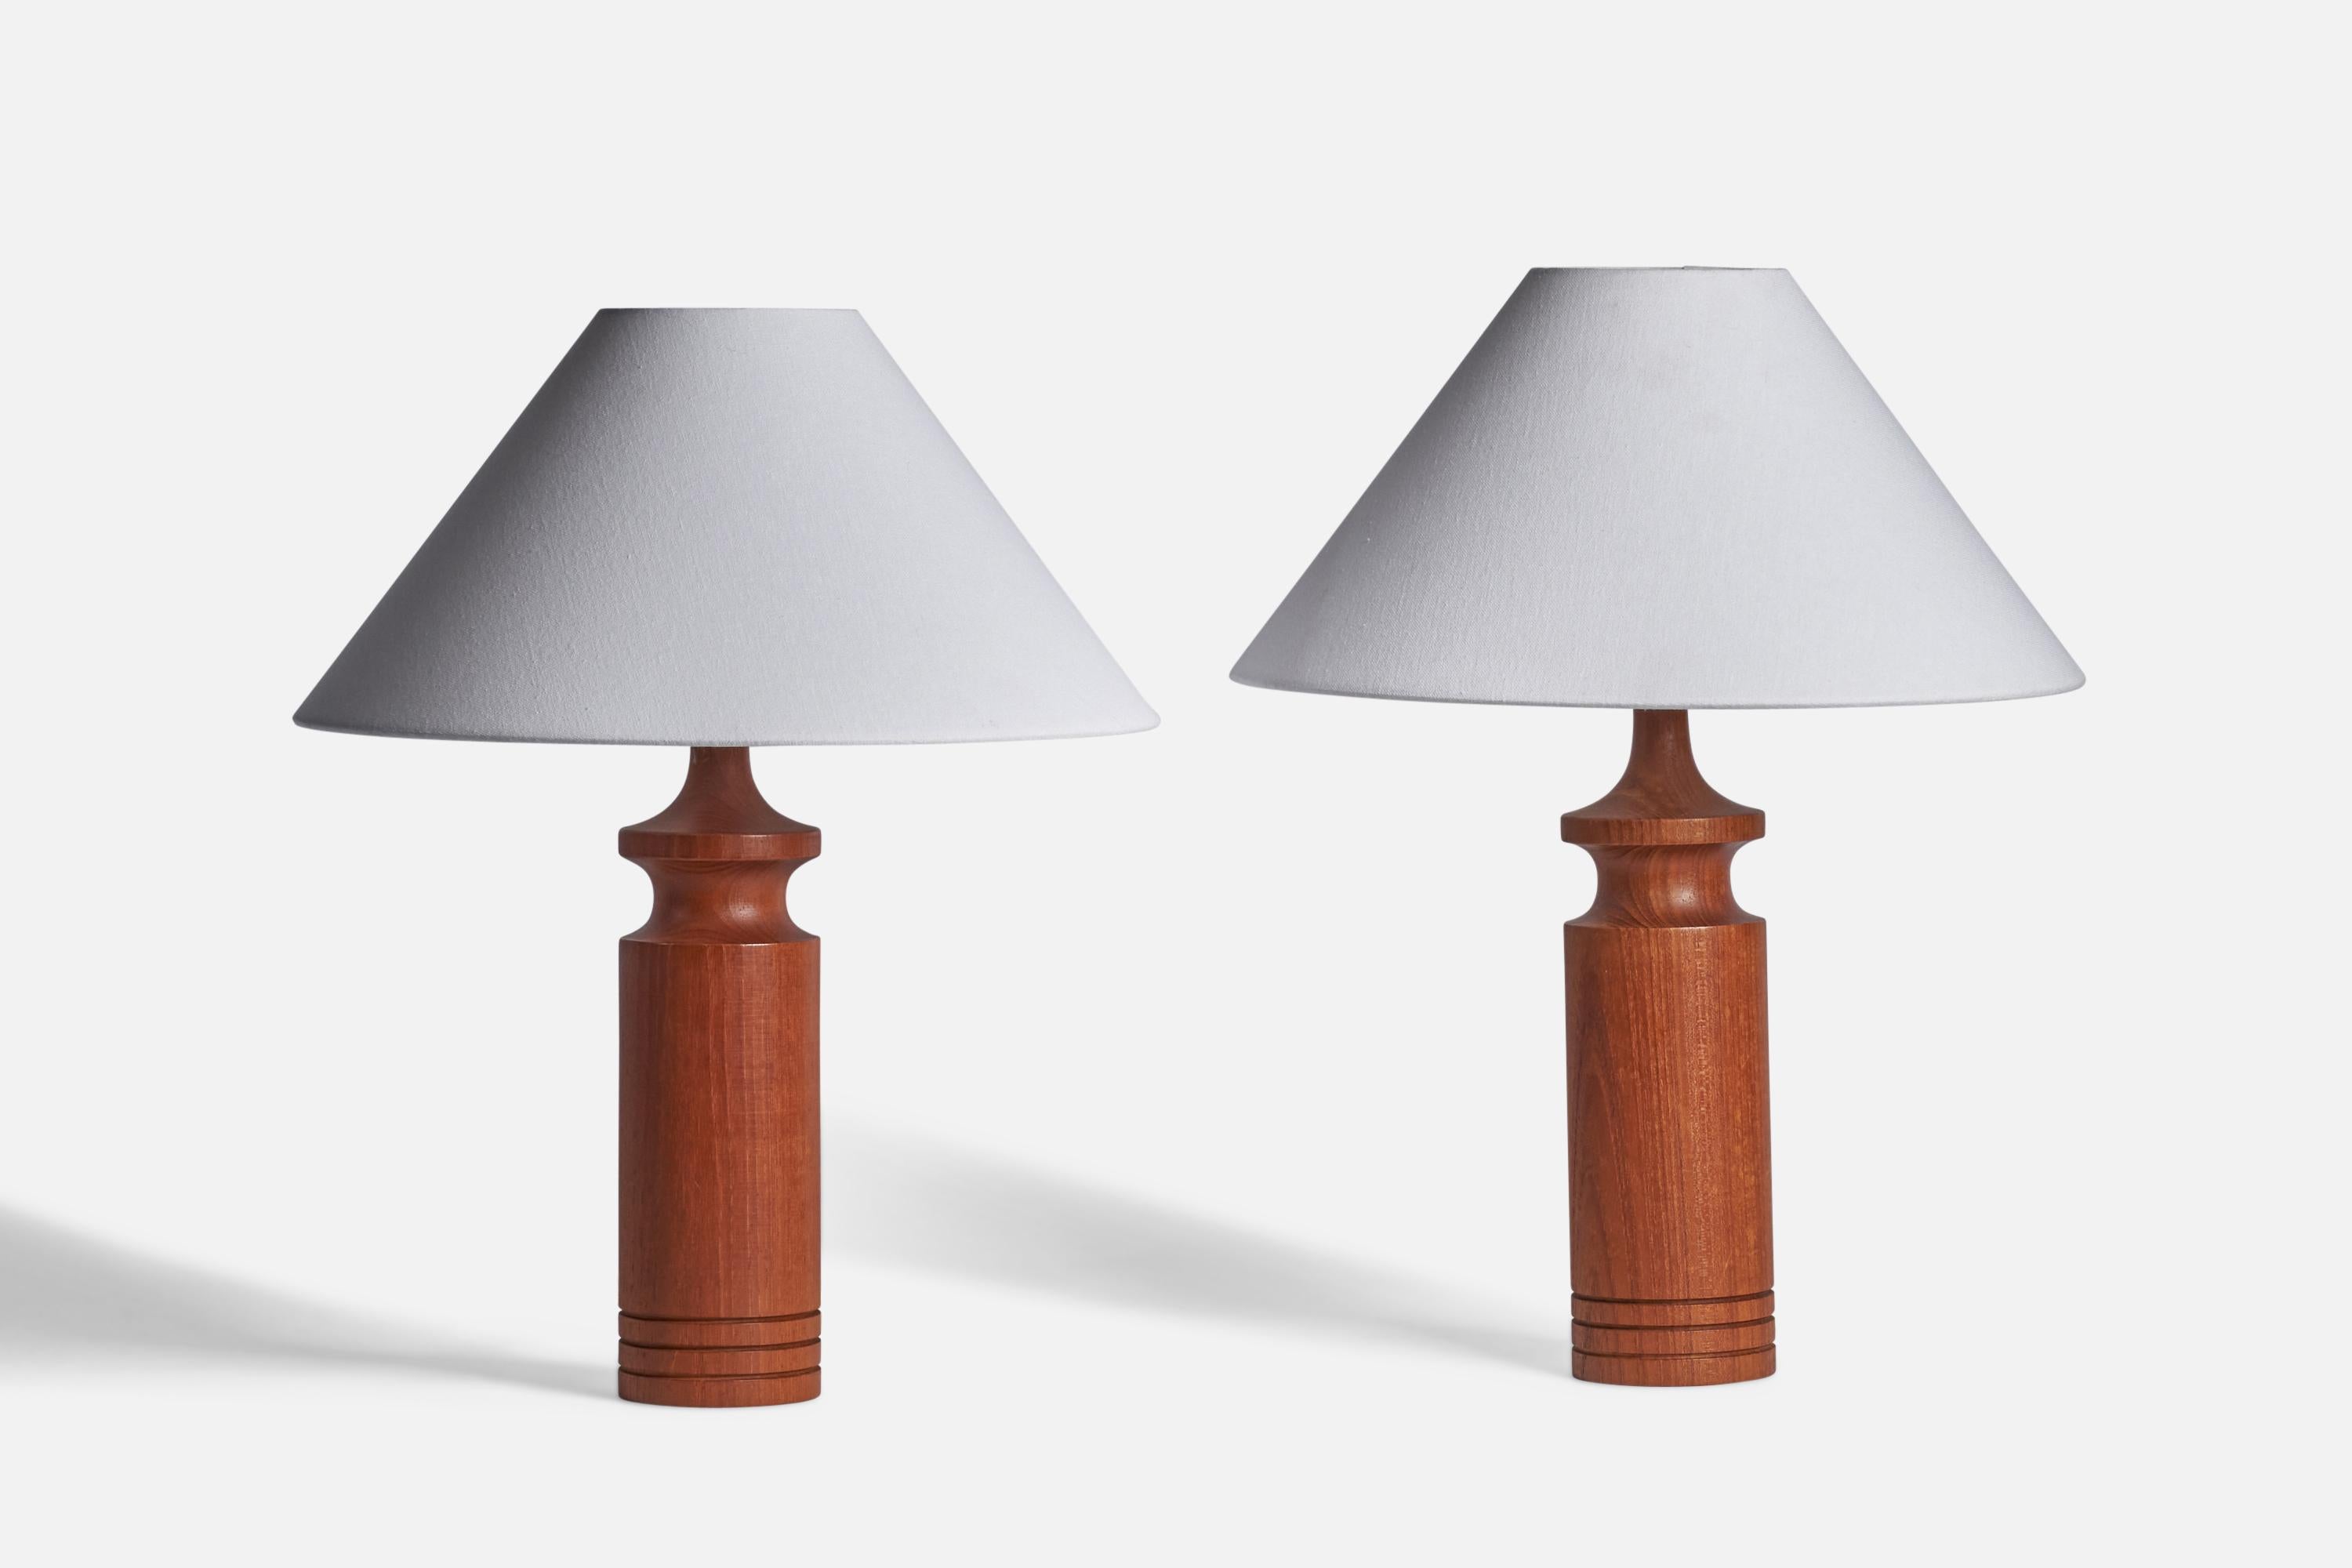 Ein Paar Tischlampen aus Teakholz, entworfen und hergestellt in Schweden, 1950er Jahre.

Abmessungen der Lampe (Zoll): 14,75